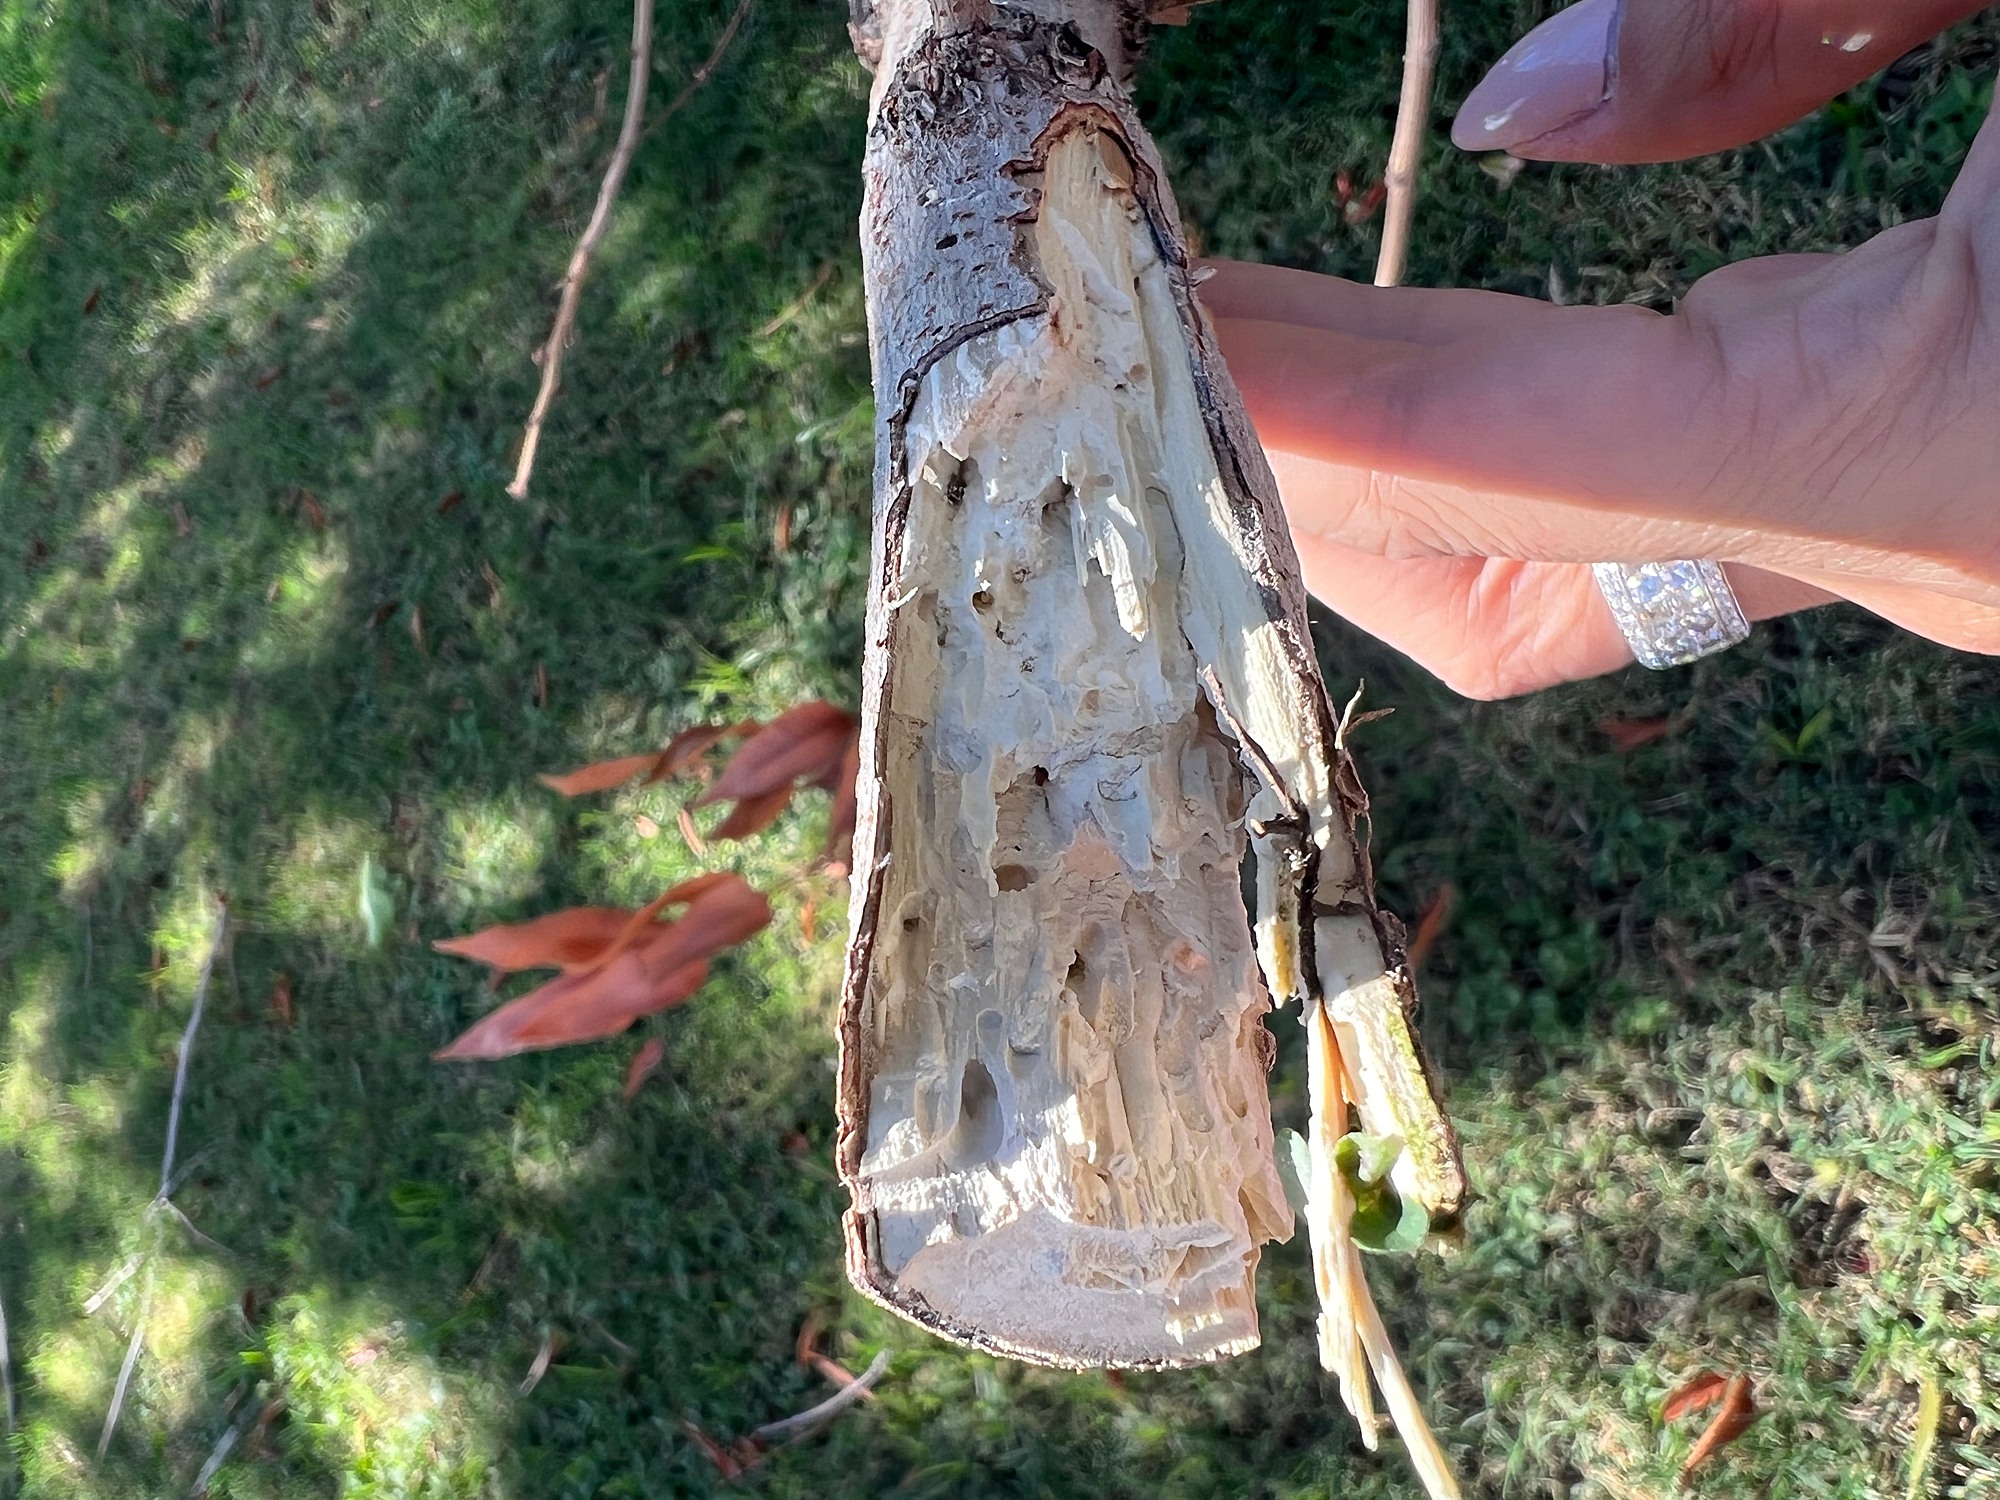 termites or wood boring beetles in tree?